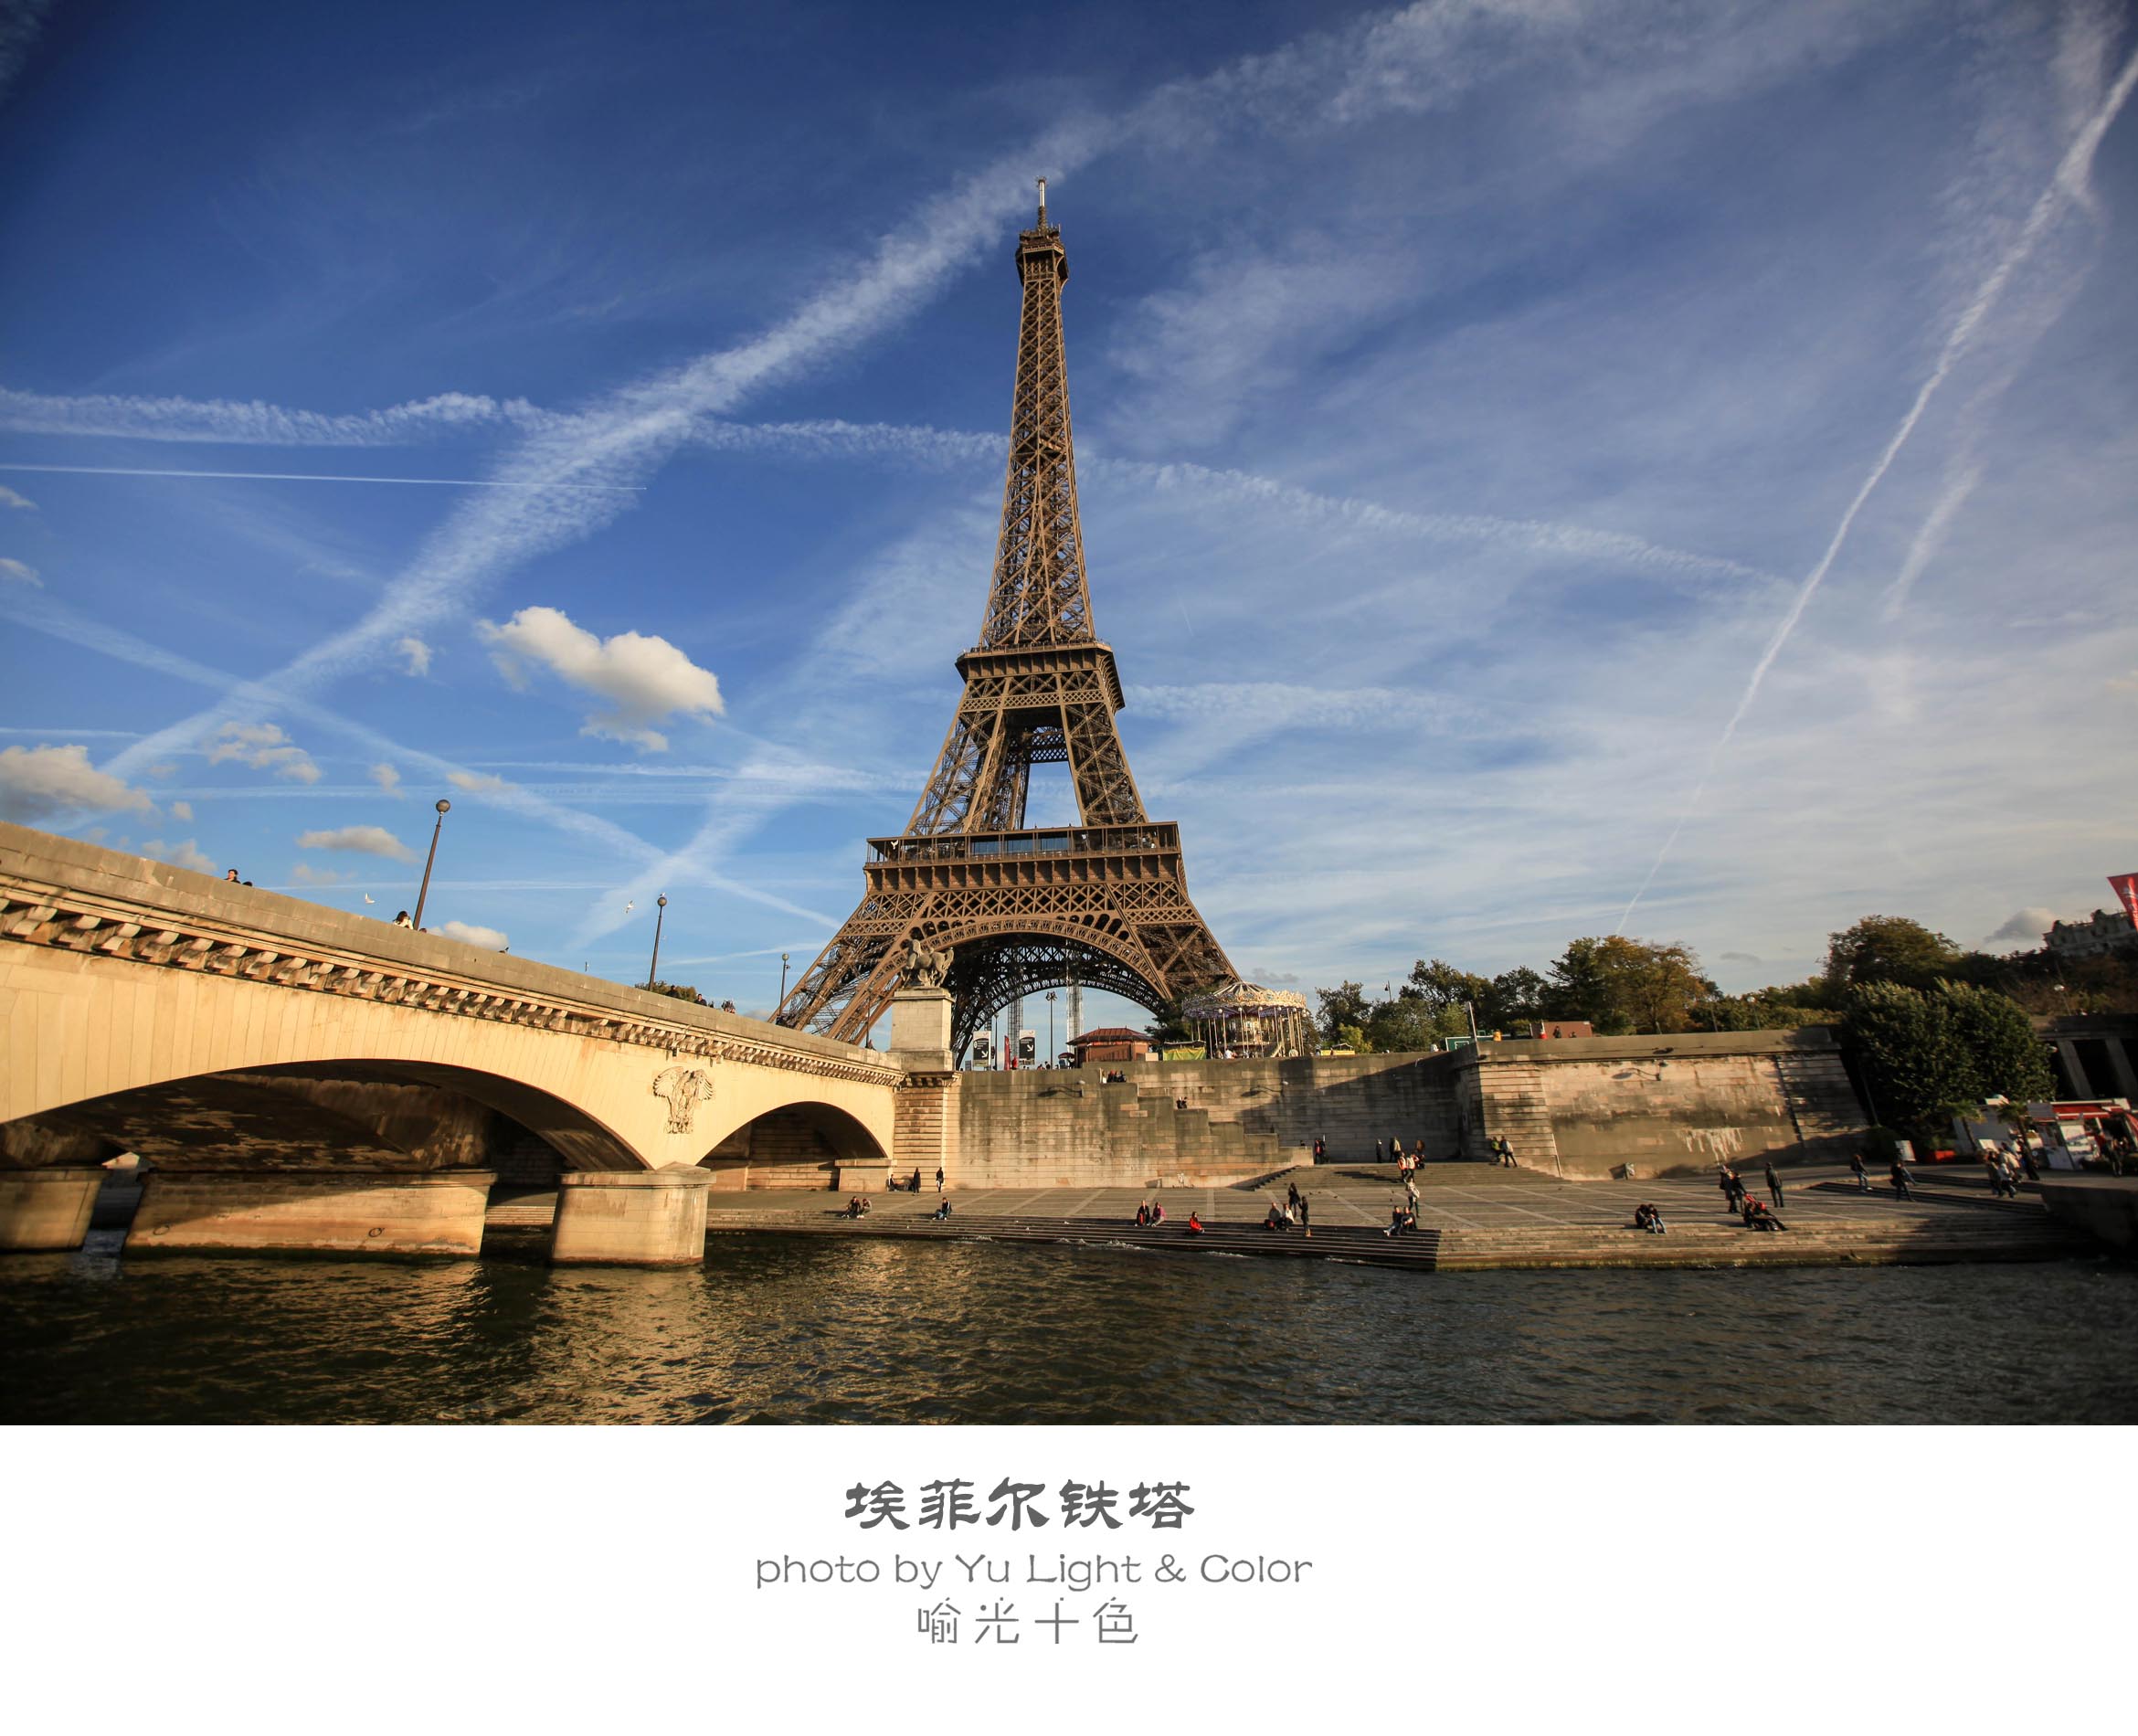 法国巴黎的雪天埃菲尔铁塔 库存图片. 图片 包括有 多雪, 纪念碑, 更加恼怒的, 巴黎, 公园, 覆盖范围 - 187281371